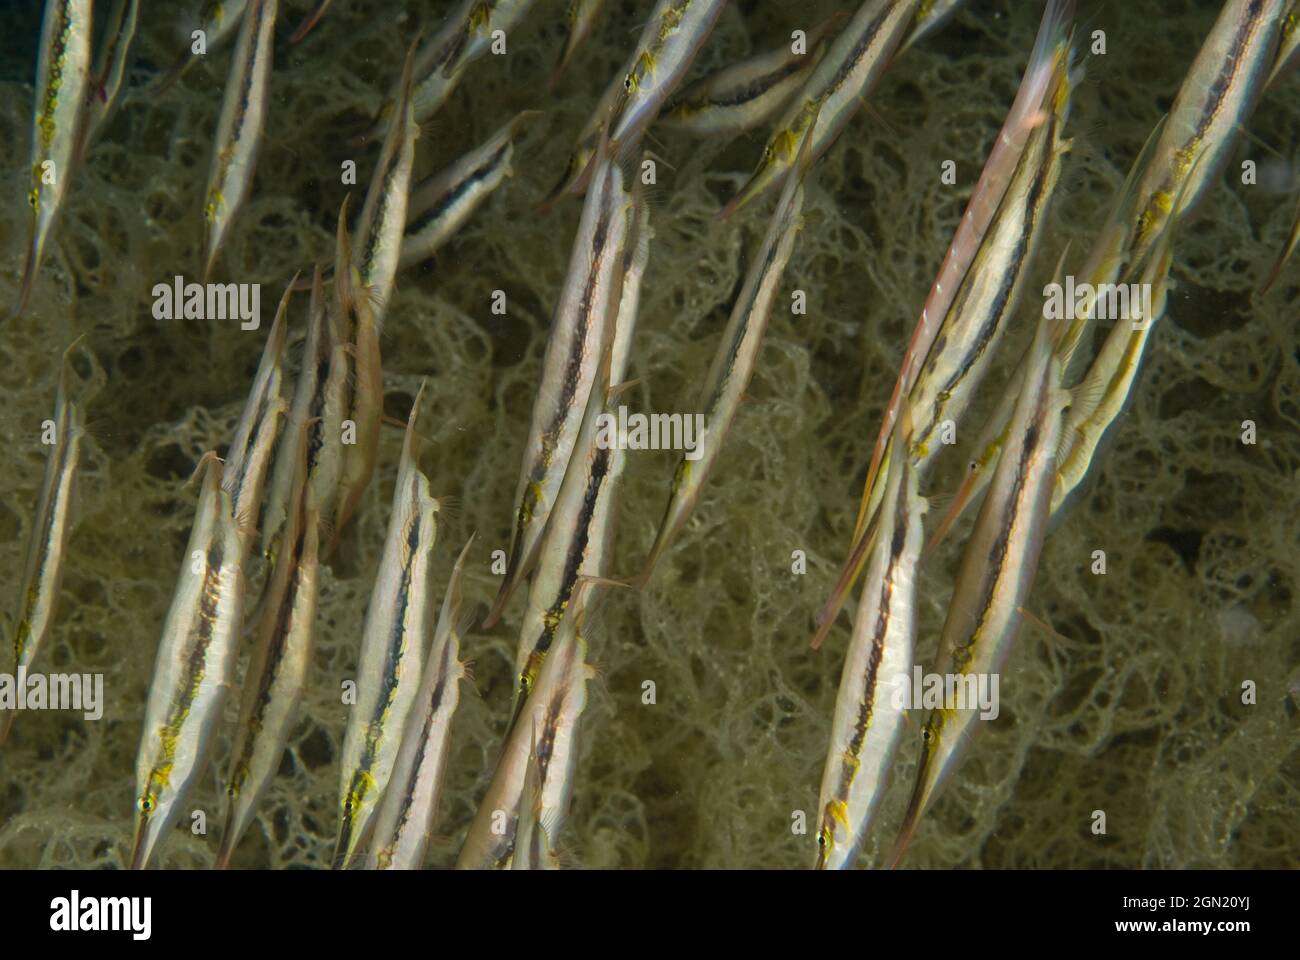 Razorfish (Aeoliscus strigatus), haben sehr dünne Körper und schwimmen in kleinen synchronisierten Gruppen, jeder Fisch in einer vertikalen Position mit seiner Schnauze spitz Stockfoto